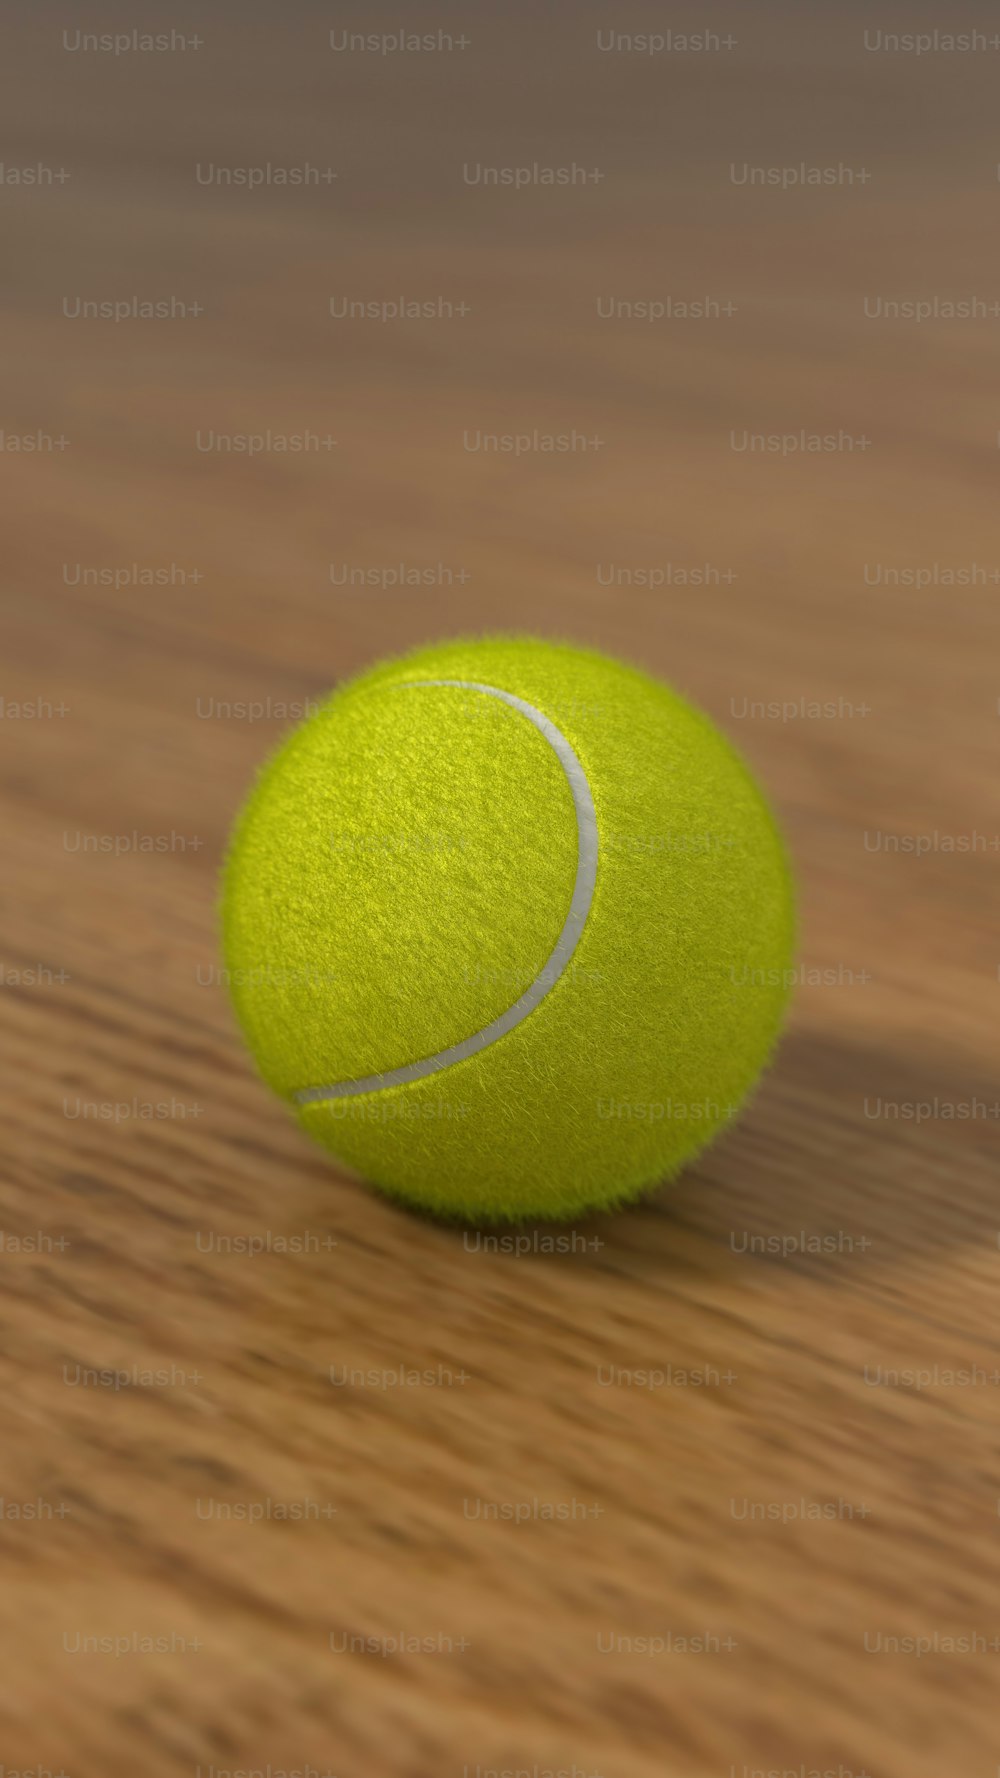 Una pelota de tenis sentada encima de una mesa de madera